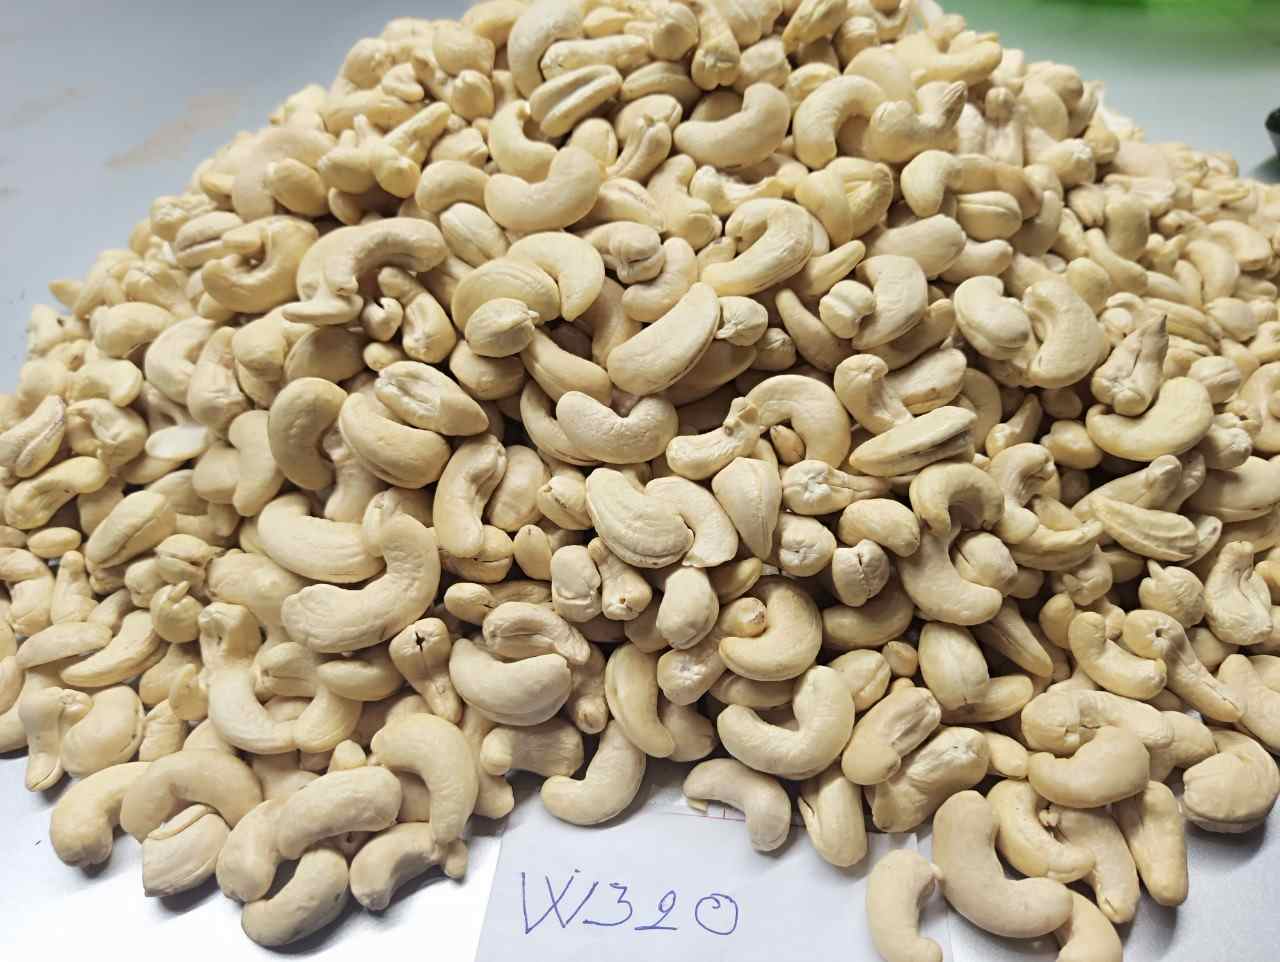 W320 Cashew Kernels Raw Image From Kimmy Farm Factory - Binh Phuoc Vietnam